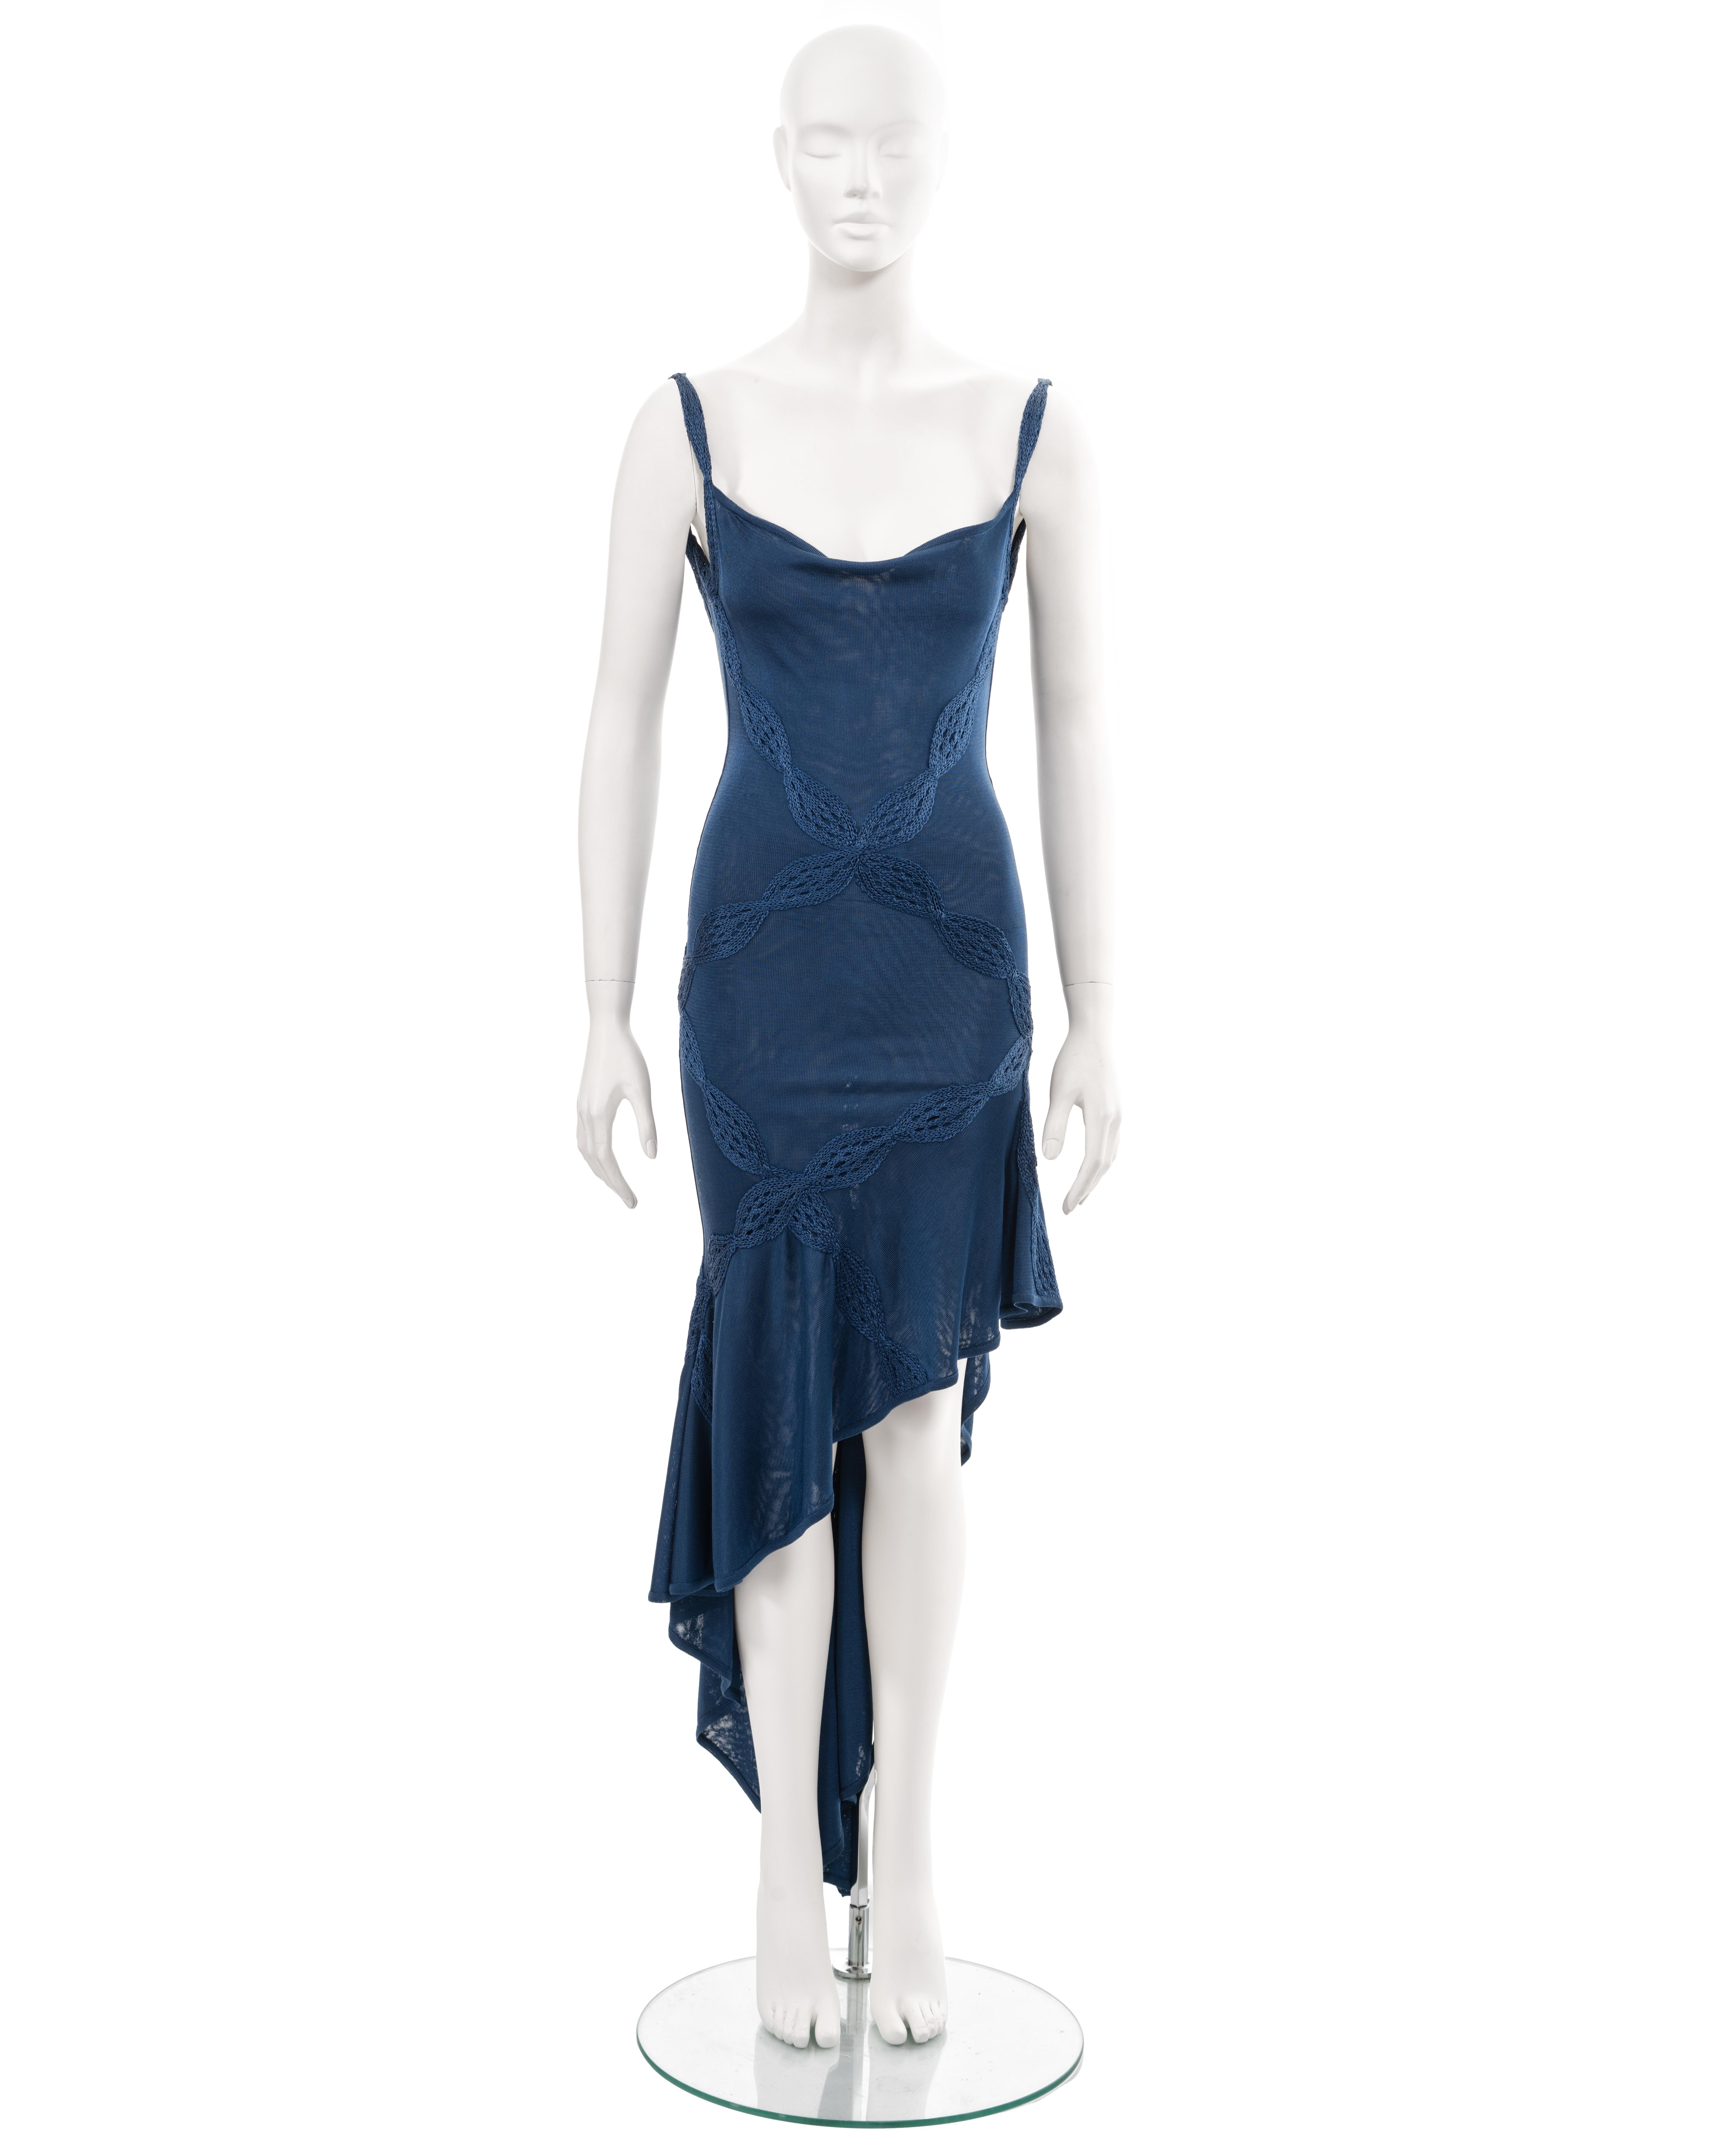 ▪ Christian Dior robe du soir en rayonne bleue tricotée
▪ Directeur de la création : John Galliano
▪ Vendu par One Of A Kind Archive
▪ Printemps-été 2001
▪ Col bénitier 
▪ Treillis d'appliqués en fil de rayonne tressé 
▪ Jupe asymétrique à taille